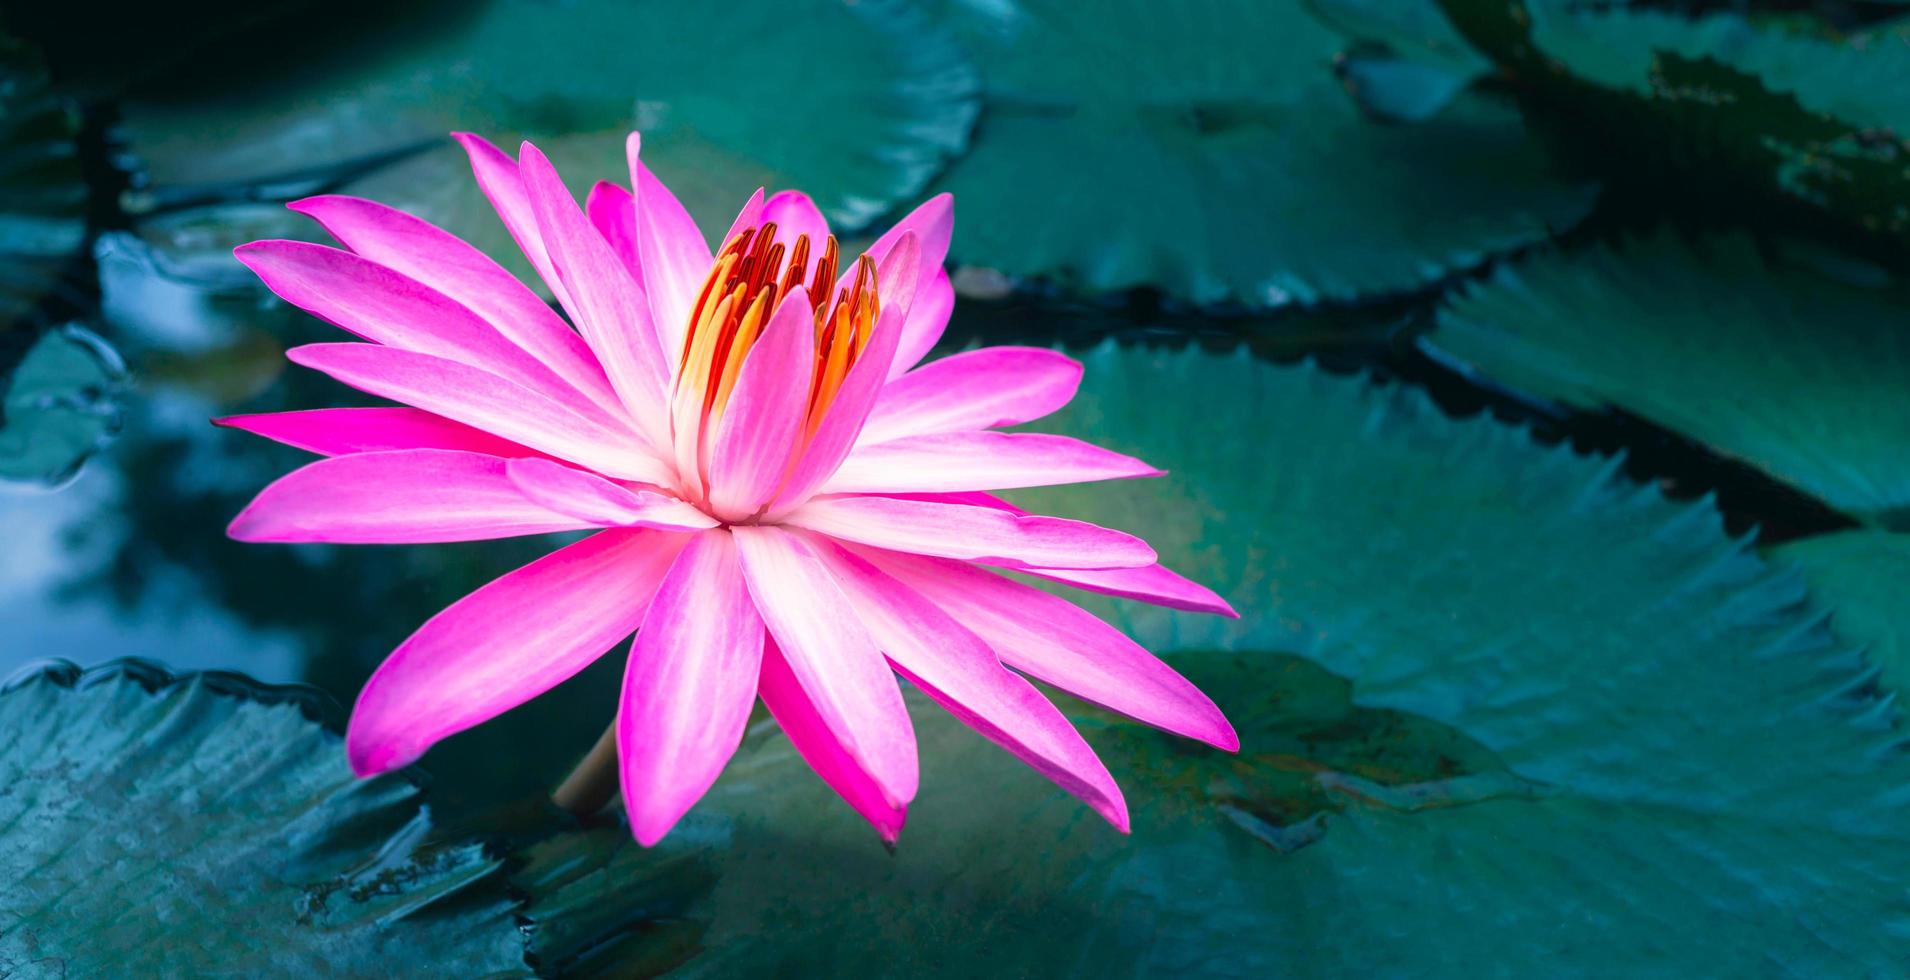 primer plano de hermoso nenúfar rosa y hoja de loto en el estanque azul.fondo de flor de loto foto